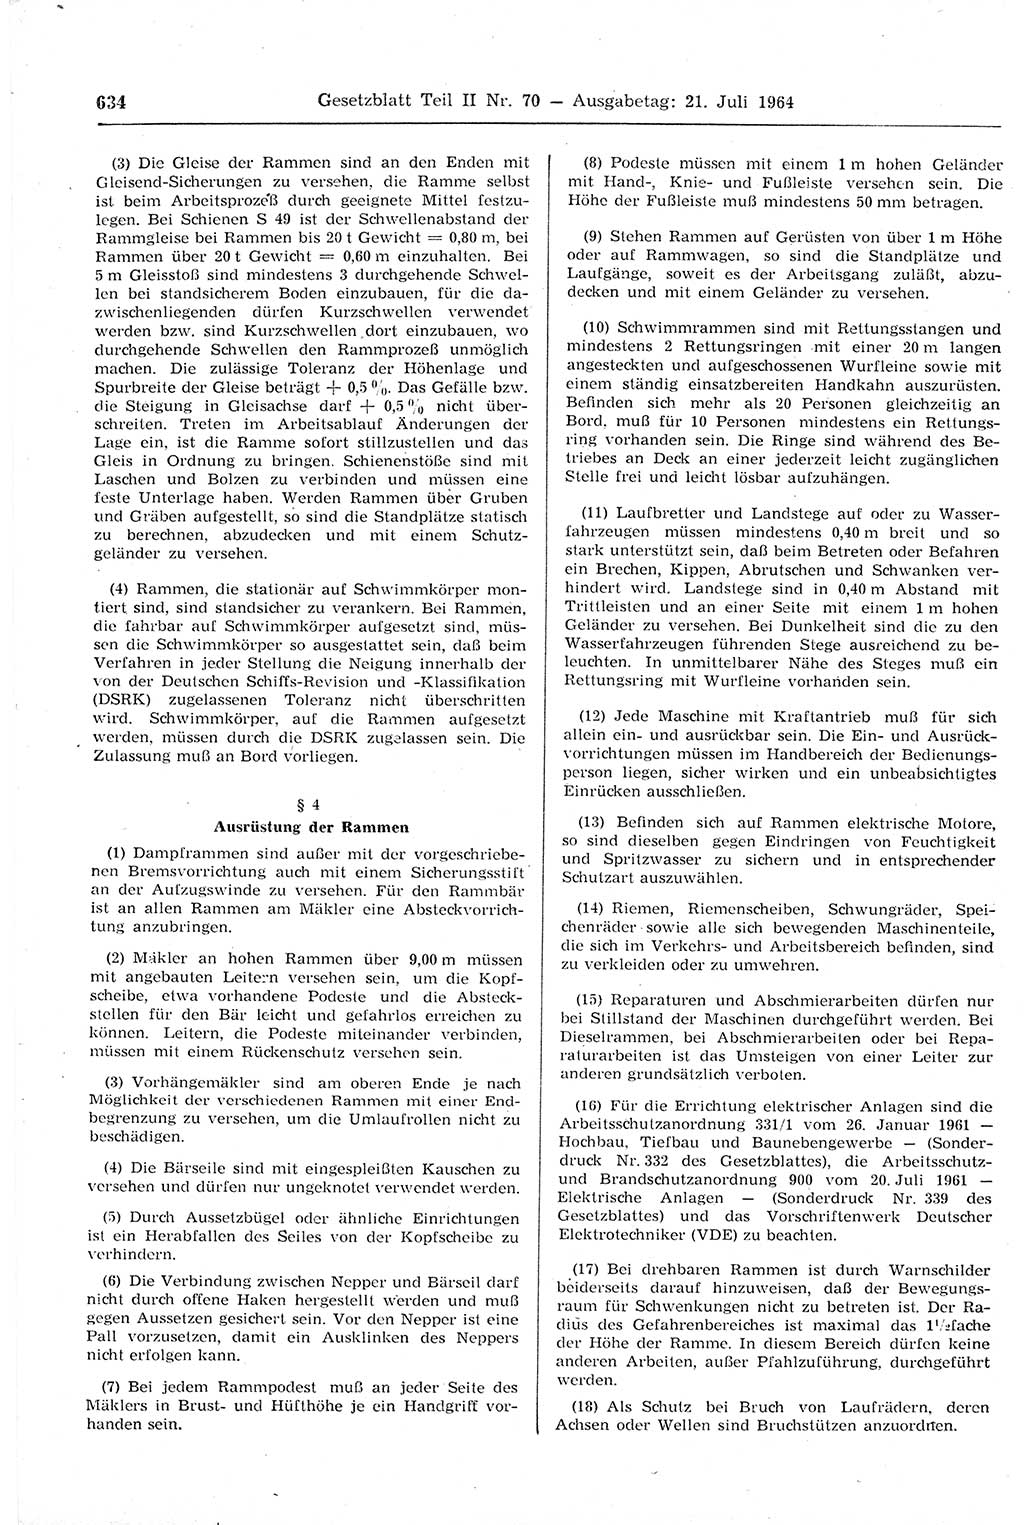 Gesetzblatt (GBl.) der Deutschen Demokratischen Republik (DDR) Teil ⅠⅠ 1964, Seite 634 (GBl. DDR ⅠⅠ 1964, S. 634)